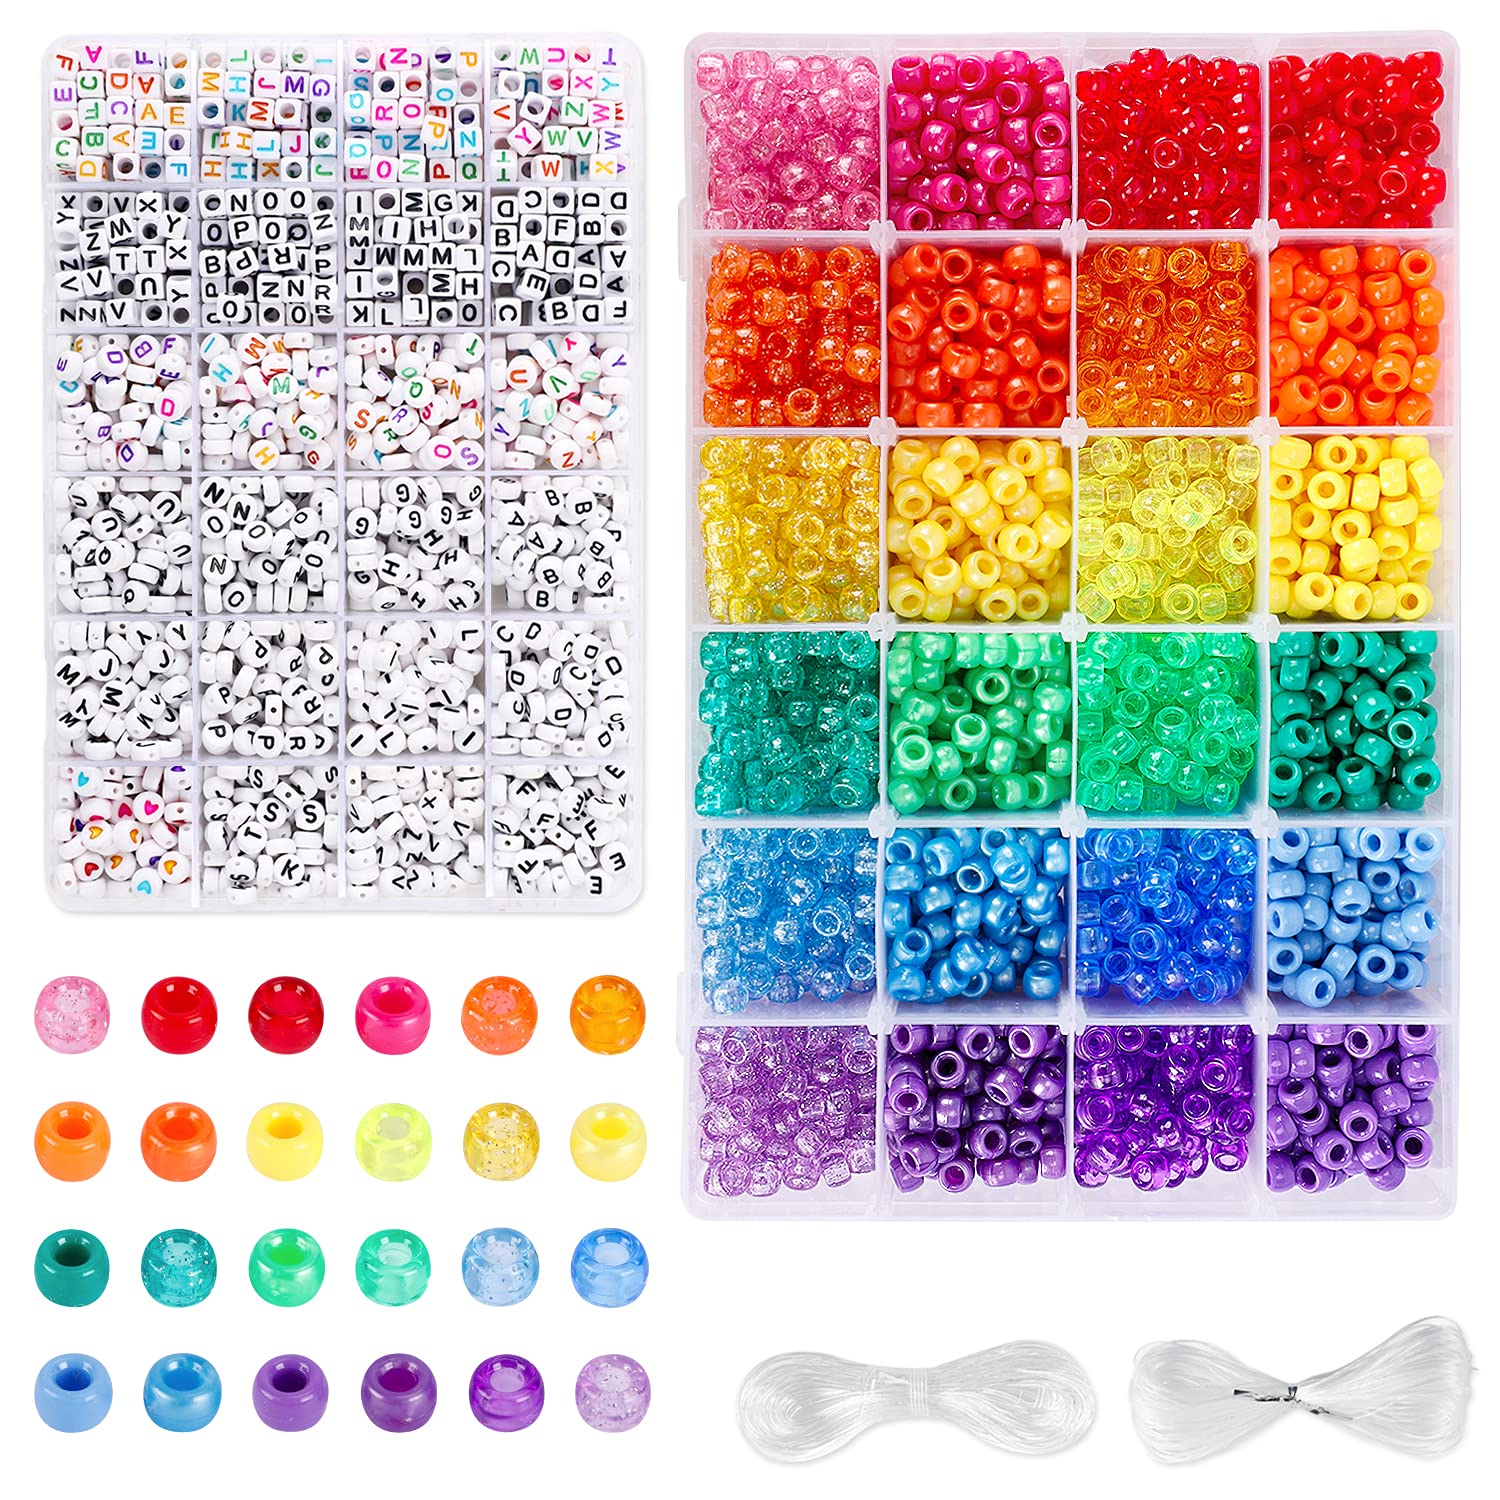 UOONY 4000pcs Pony Beads Kit, 2400pcs Rainbow Kandi Beads and